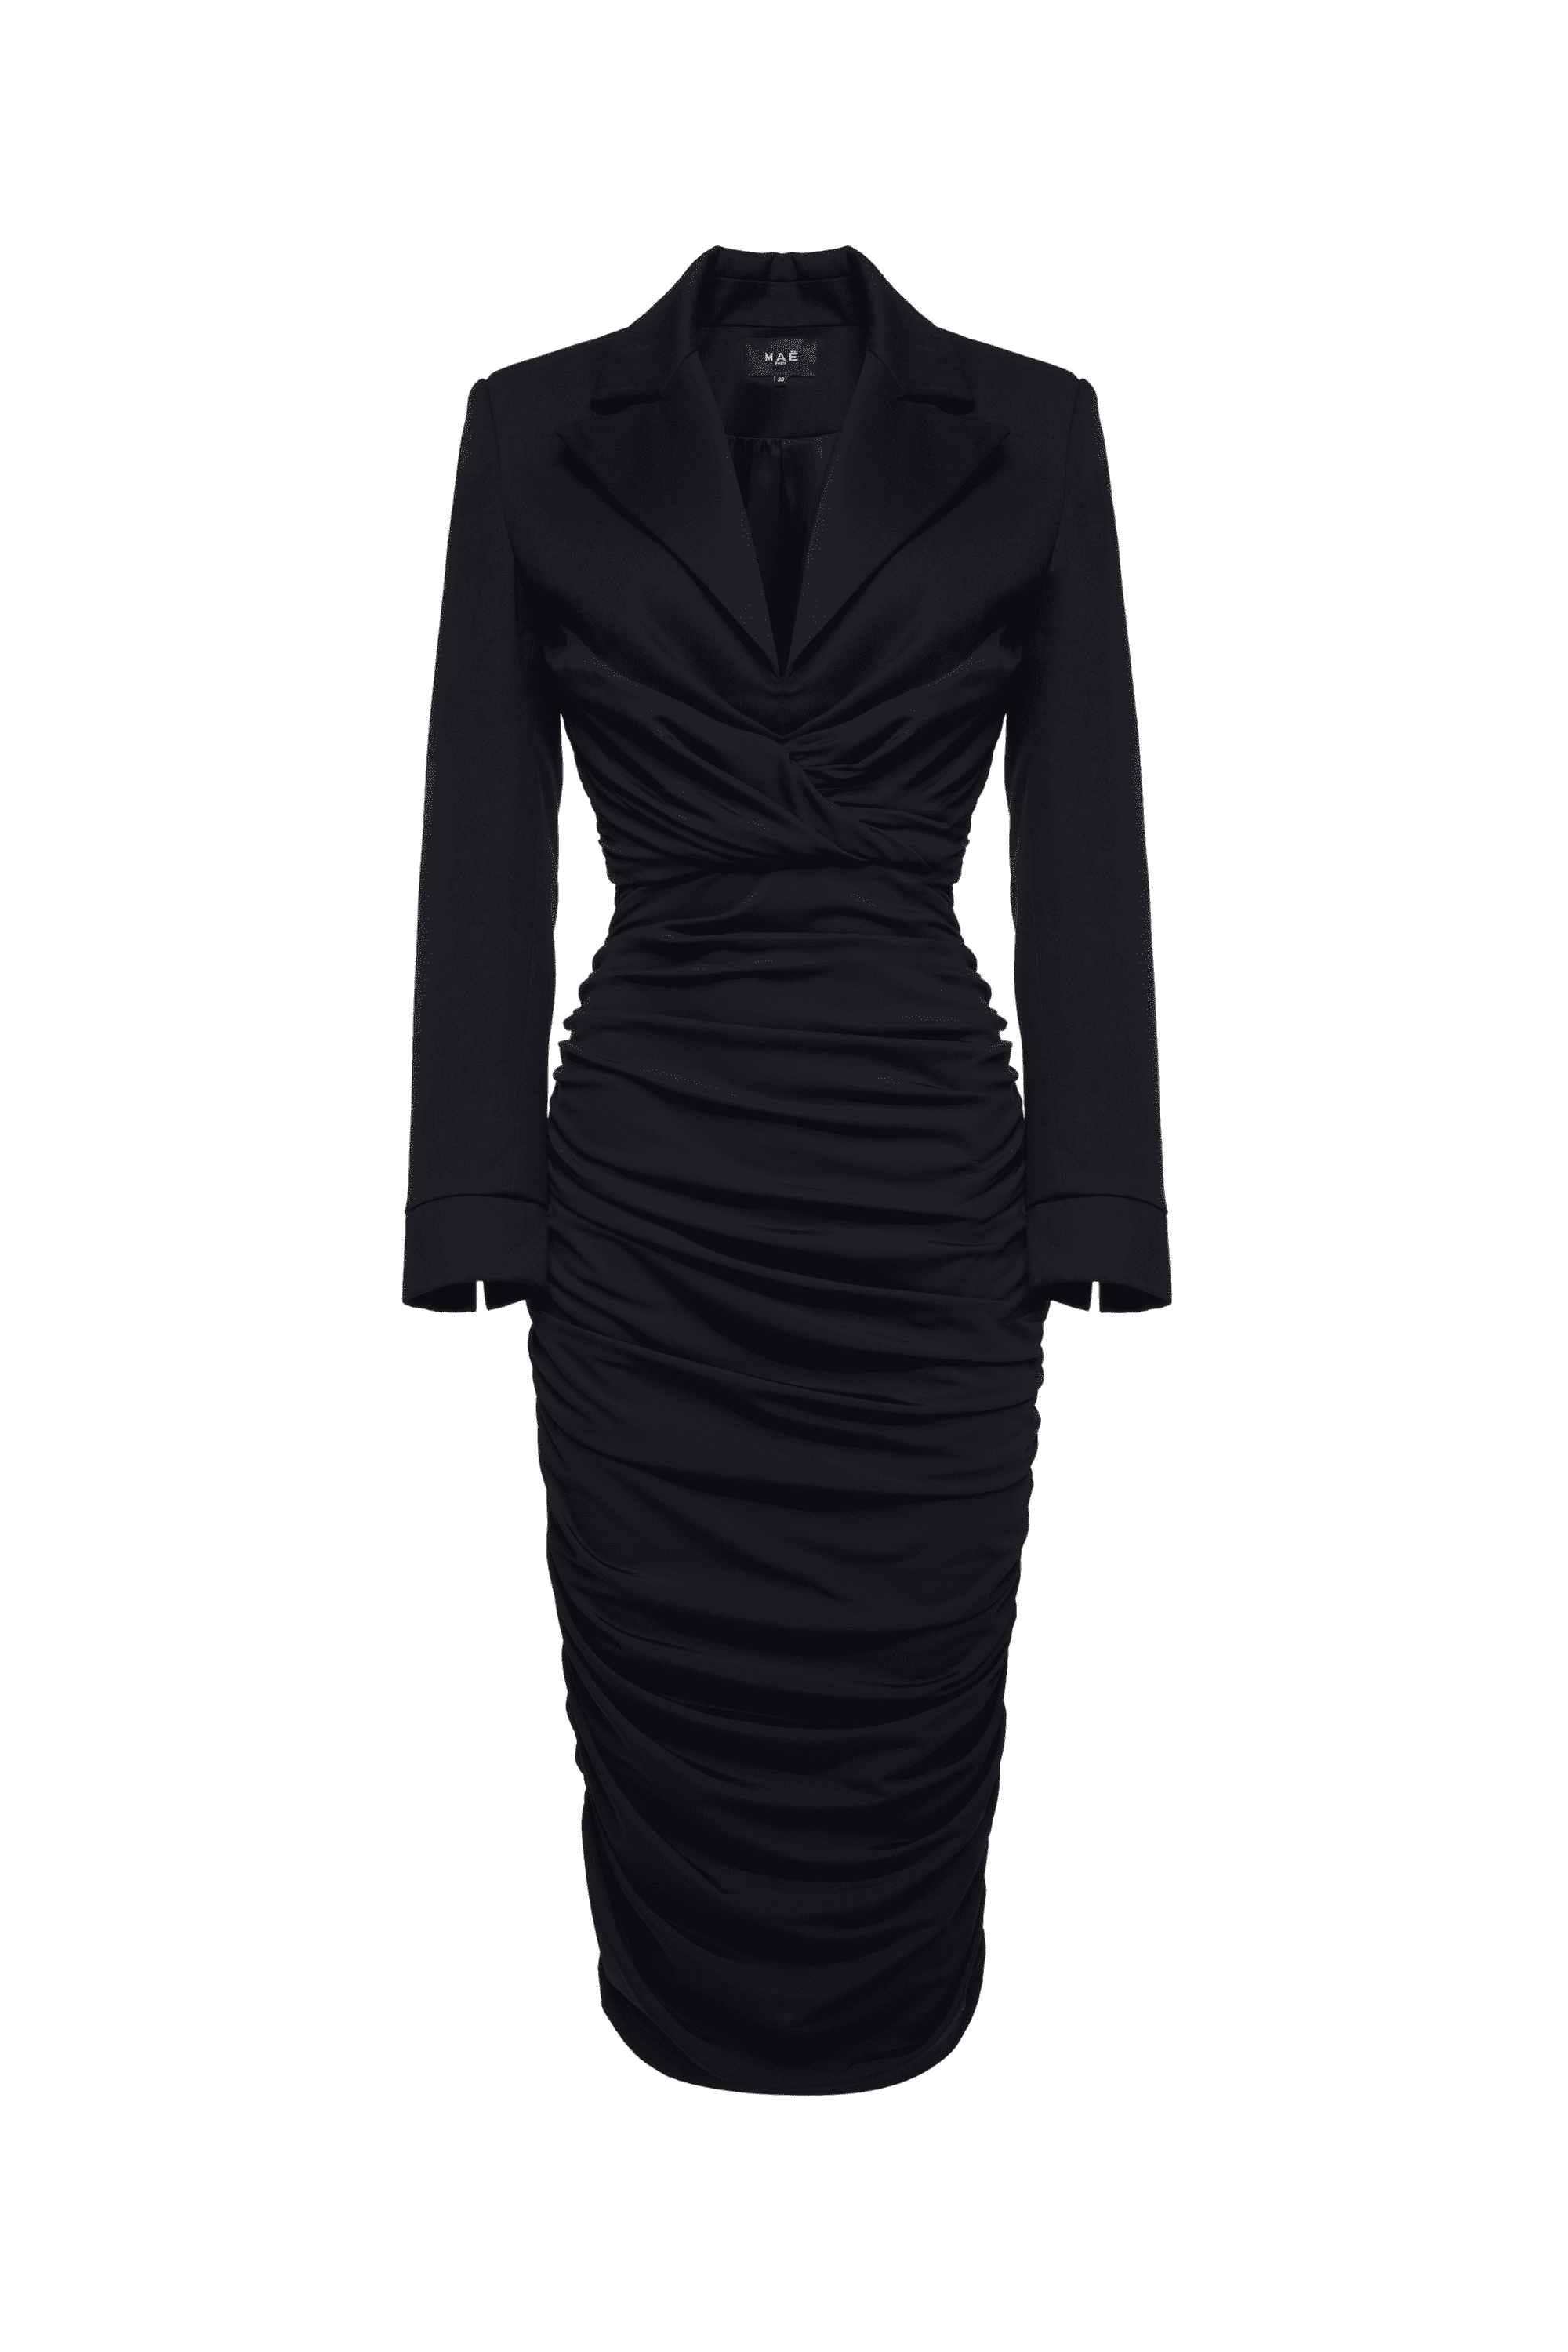 Black Fatal dress